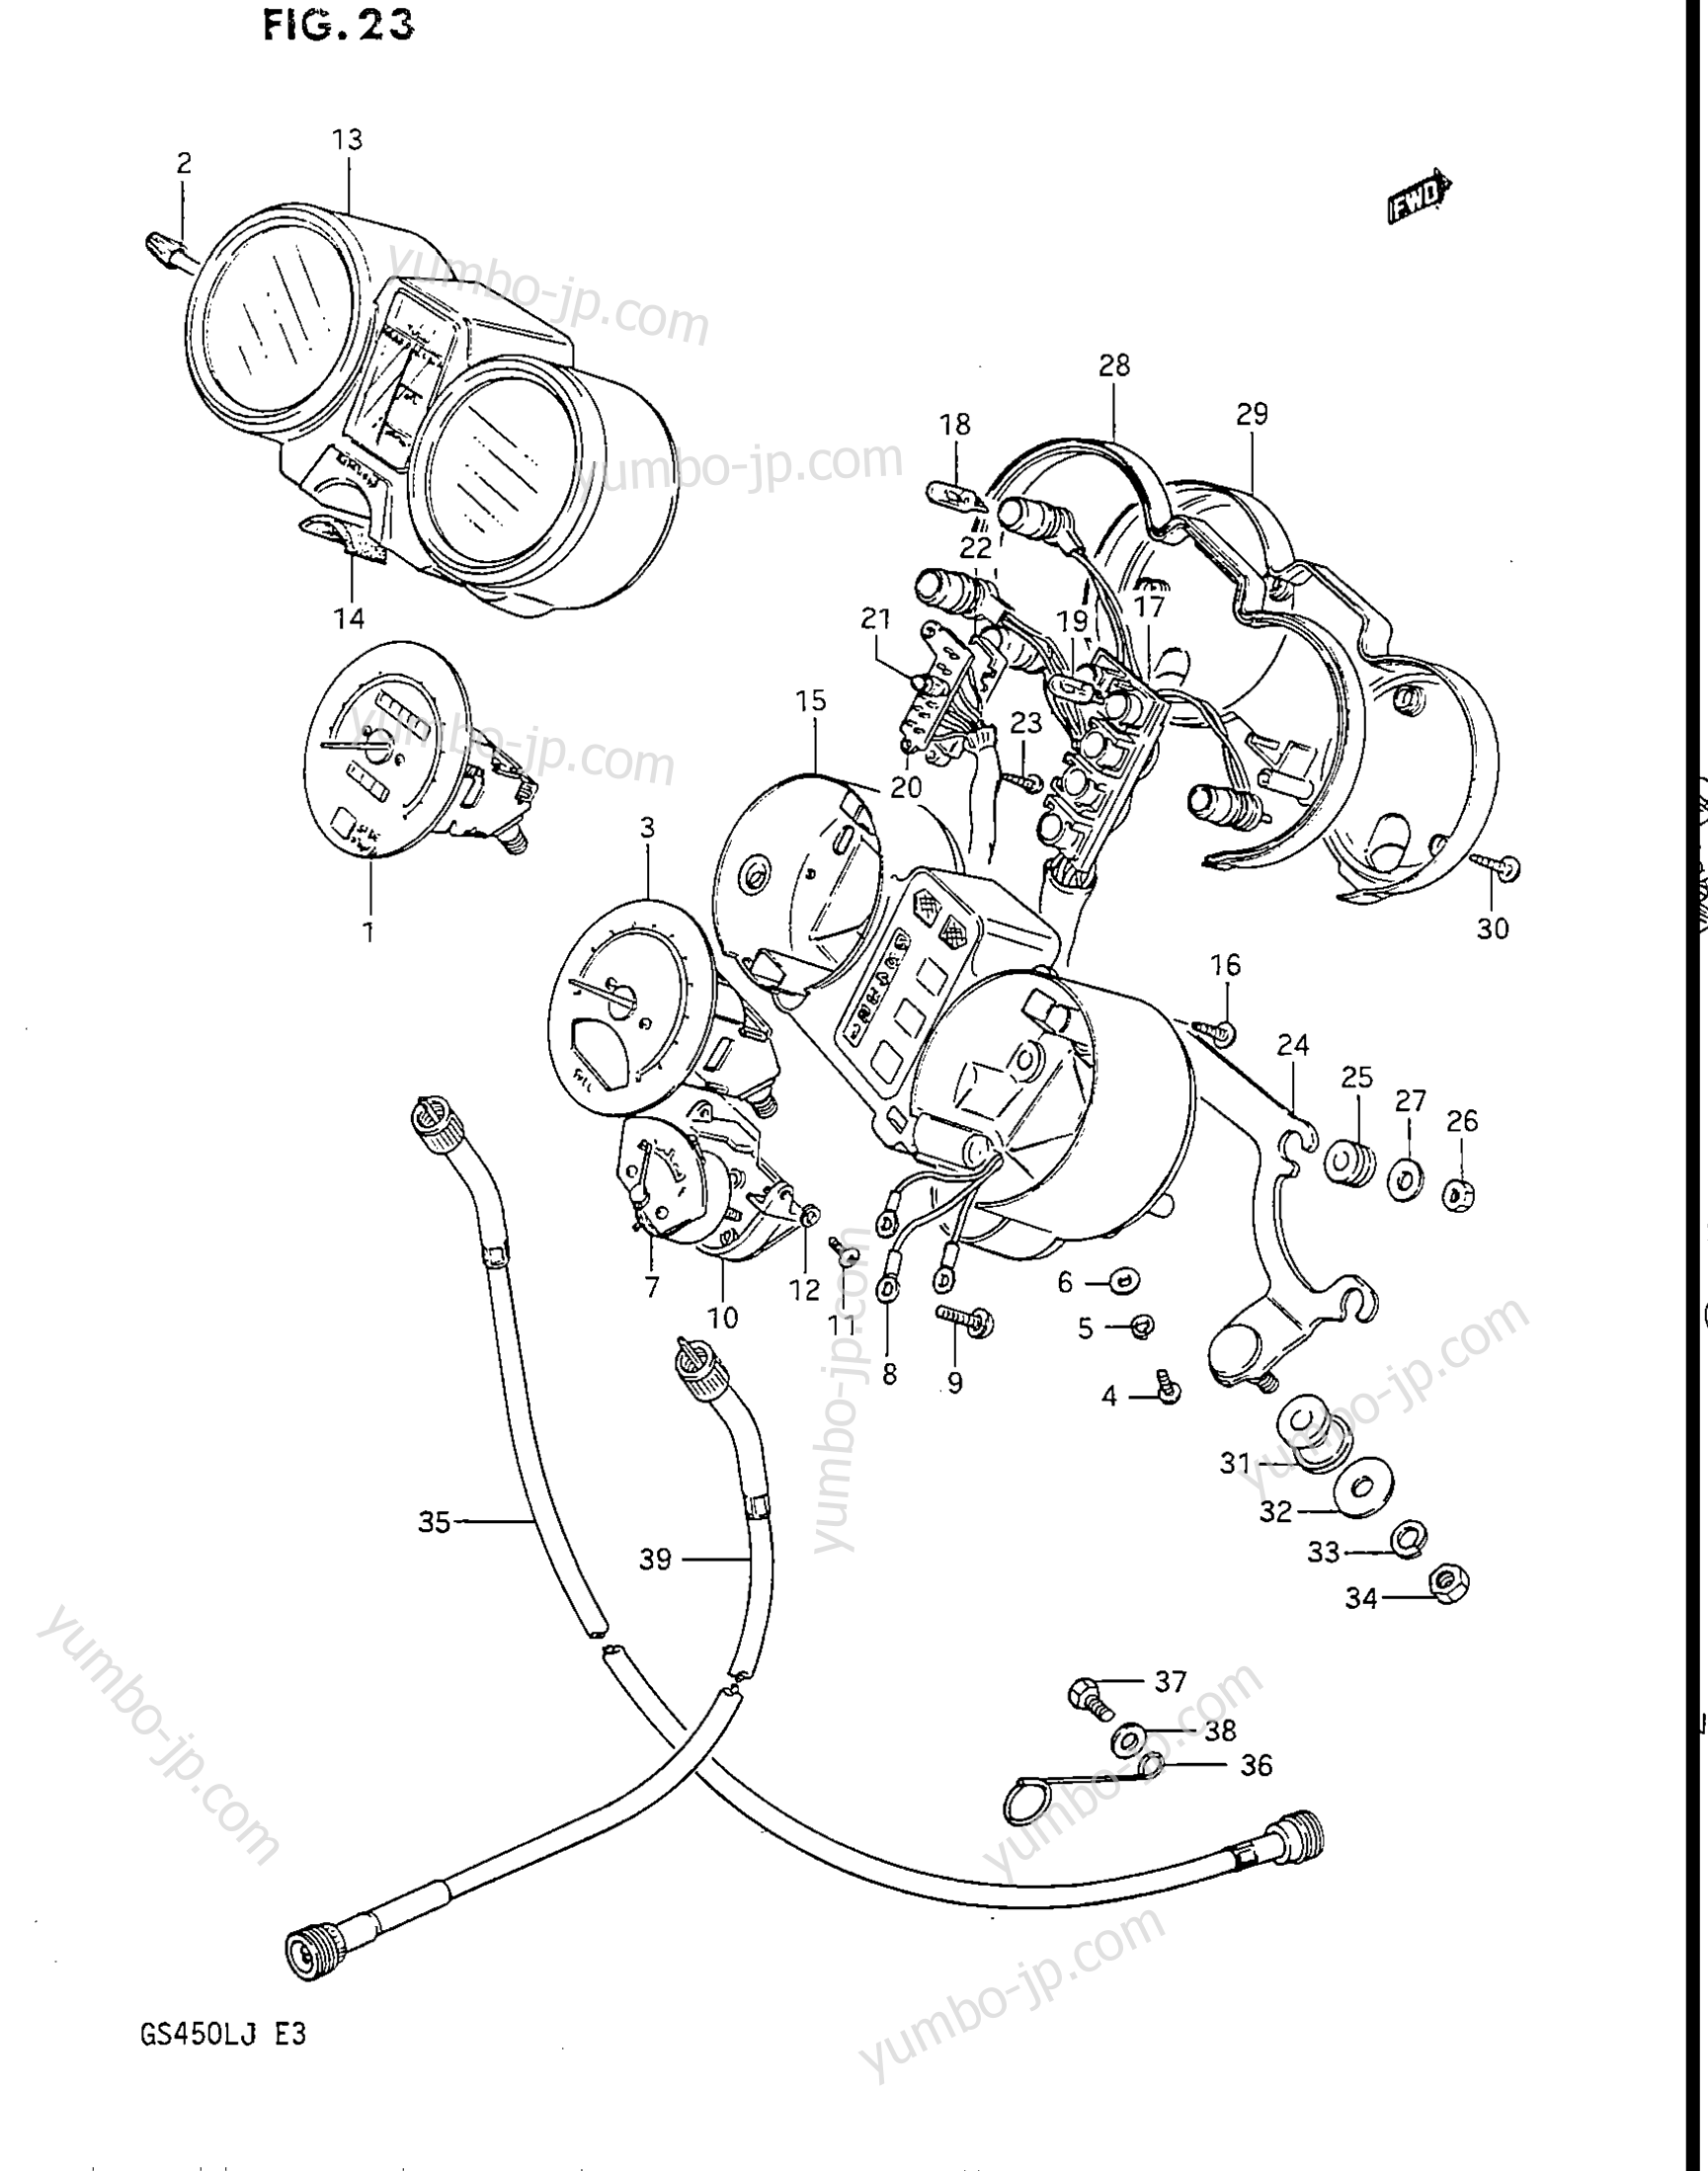 Speedometer - Tachometer for motorcycles SUZUKI GS450L 1985 year